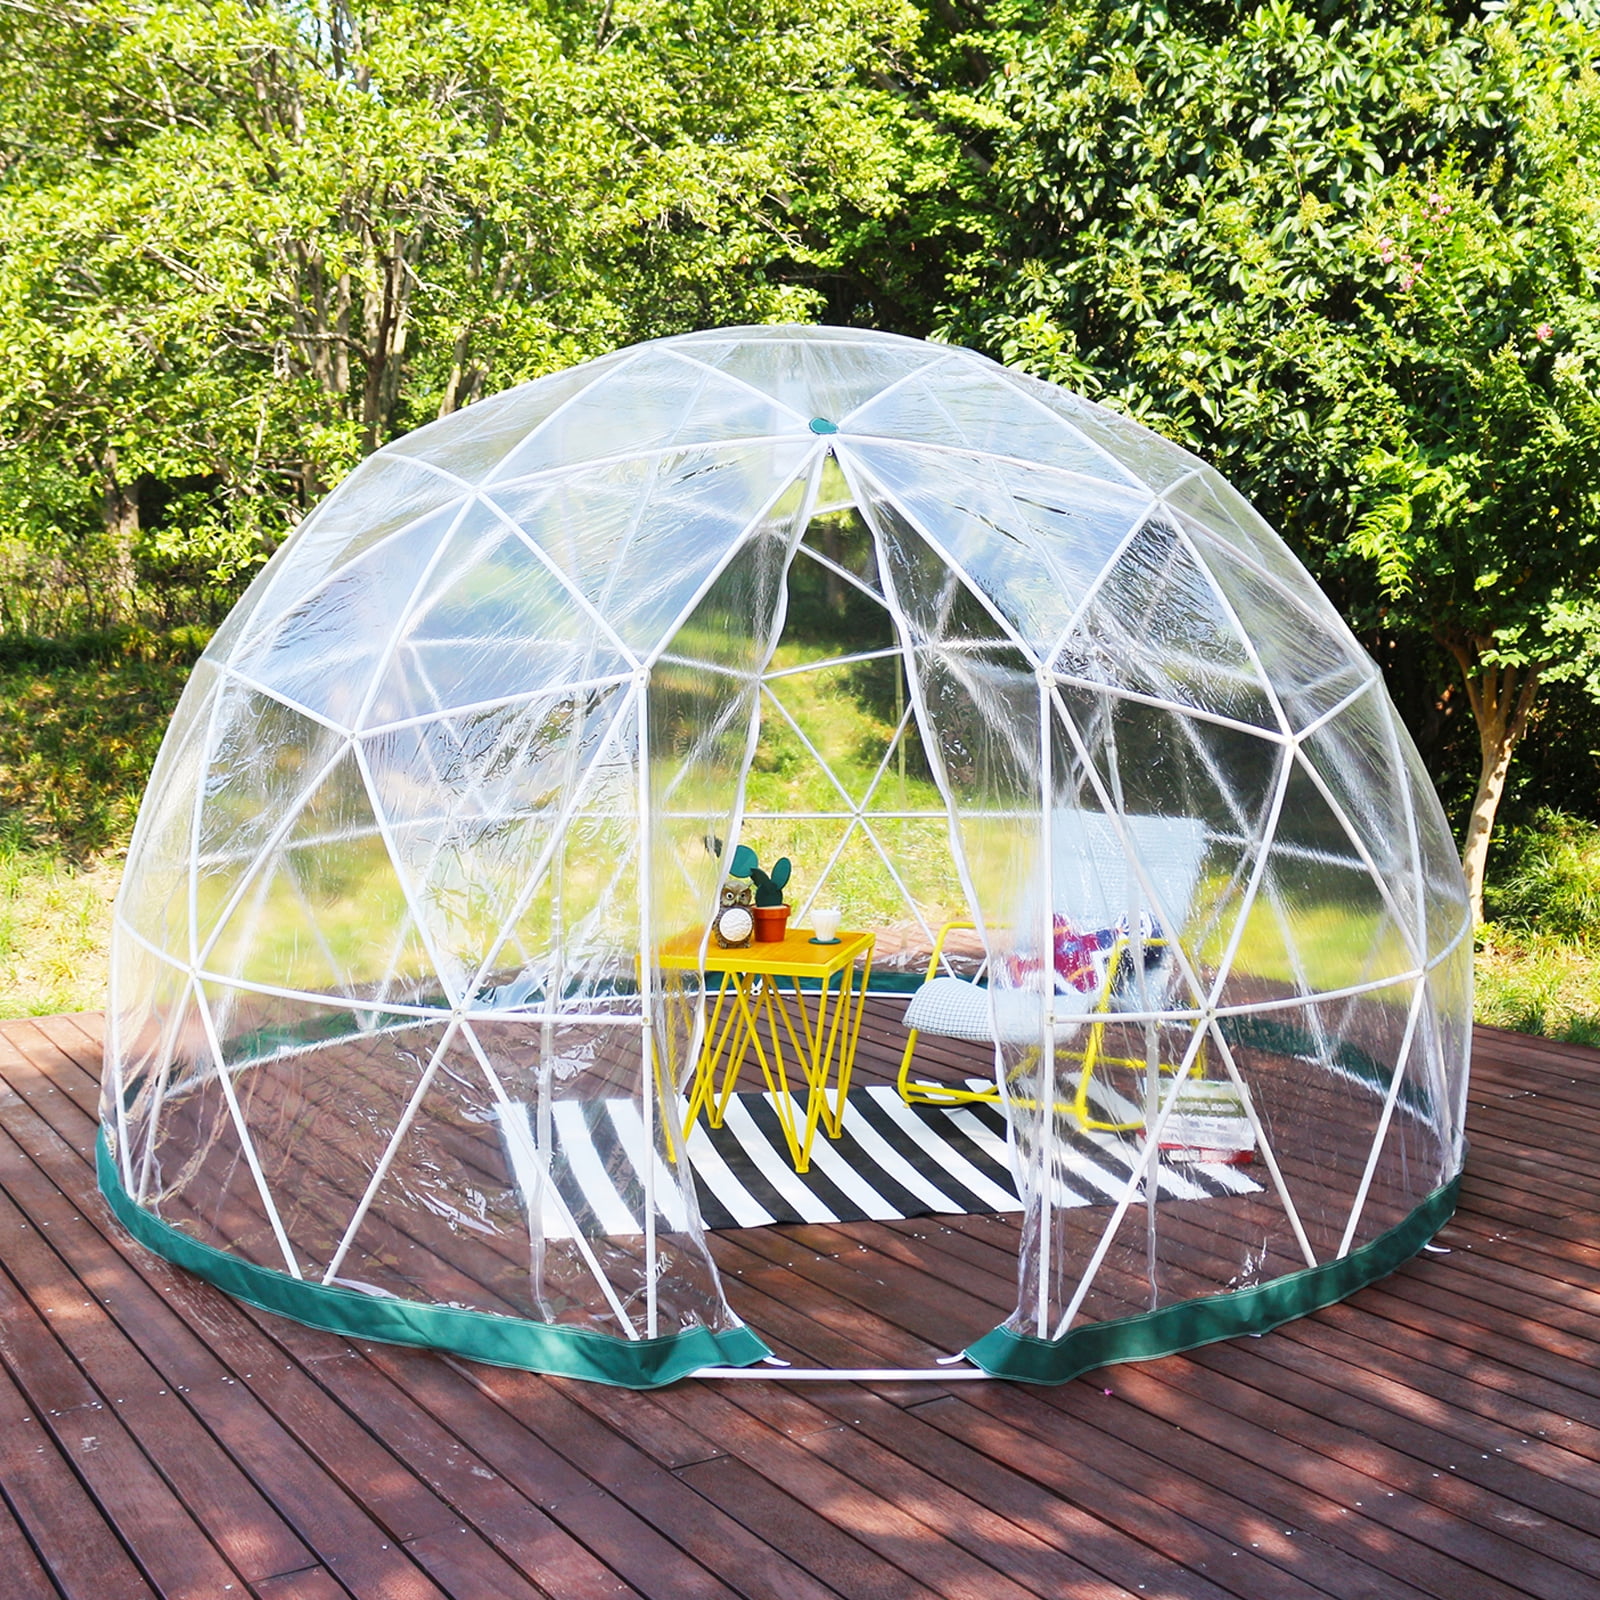 Bentism Garden Dome Bubble Tent 9 5ft